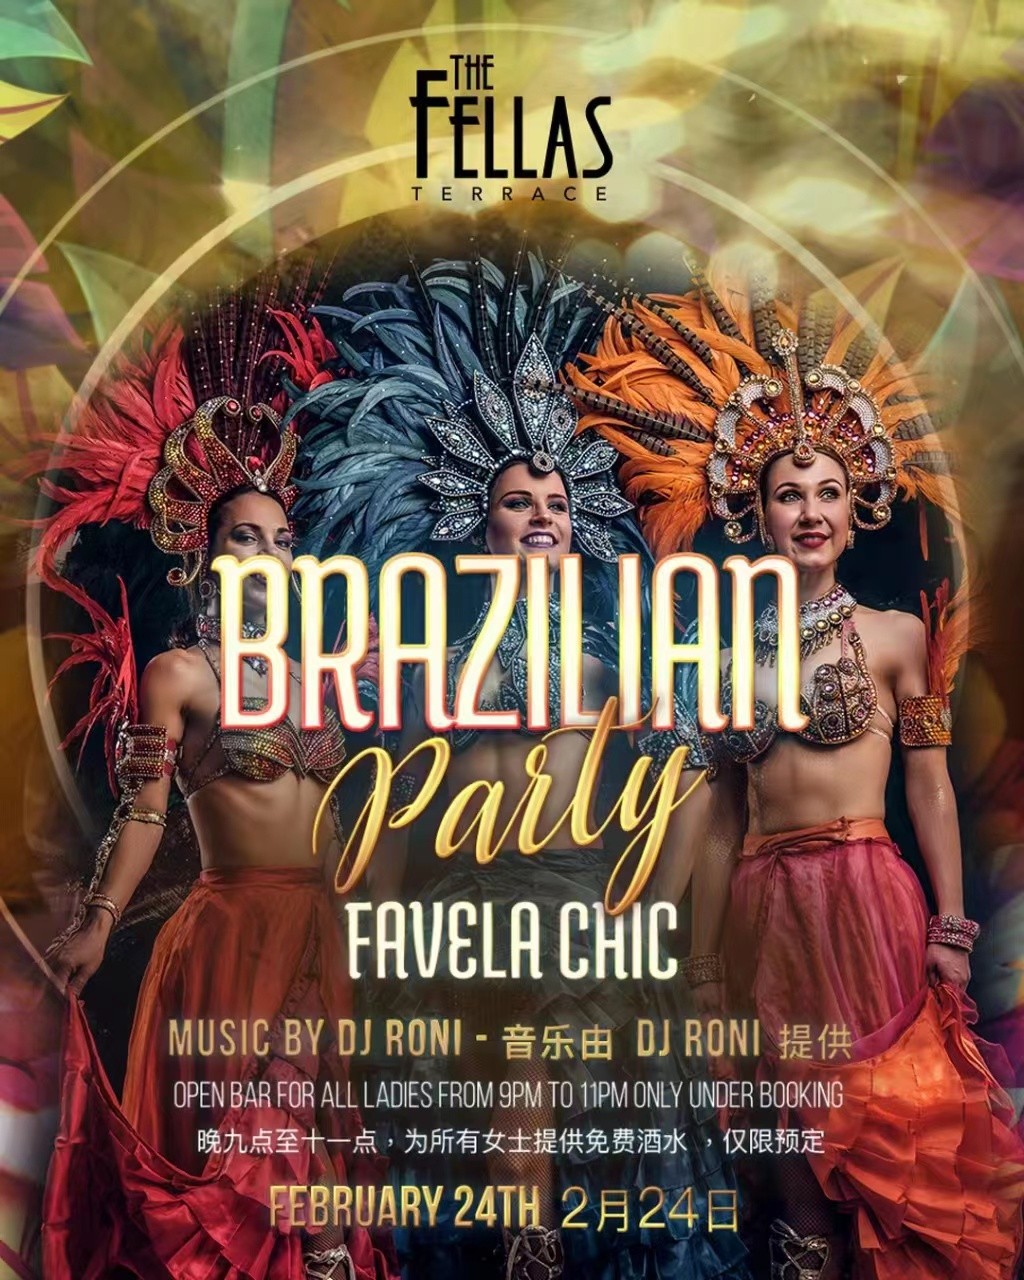 feb-24-brazilian-party-fellas.jpg